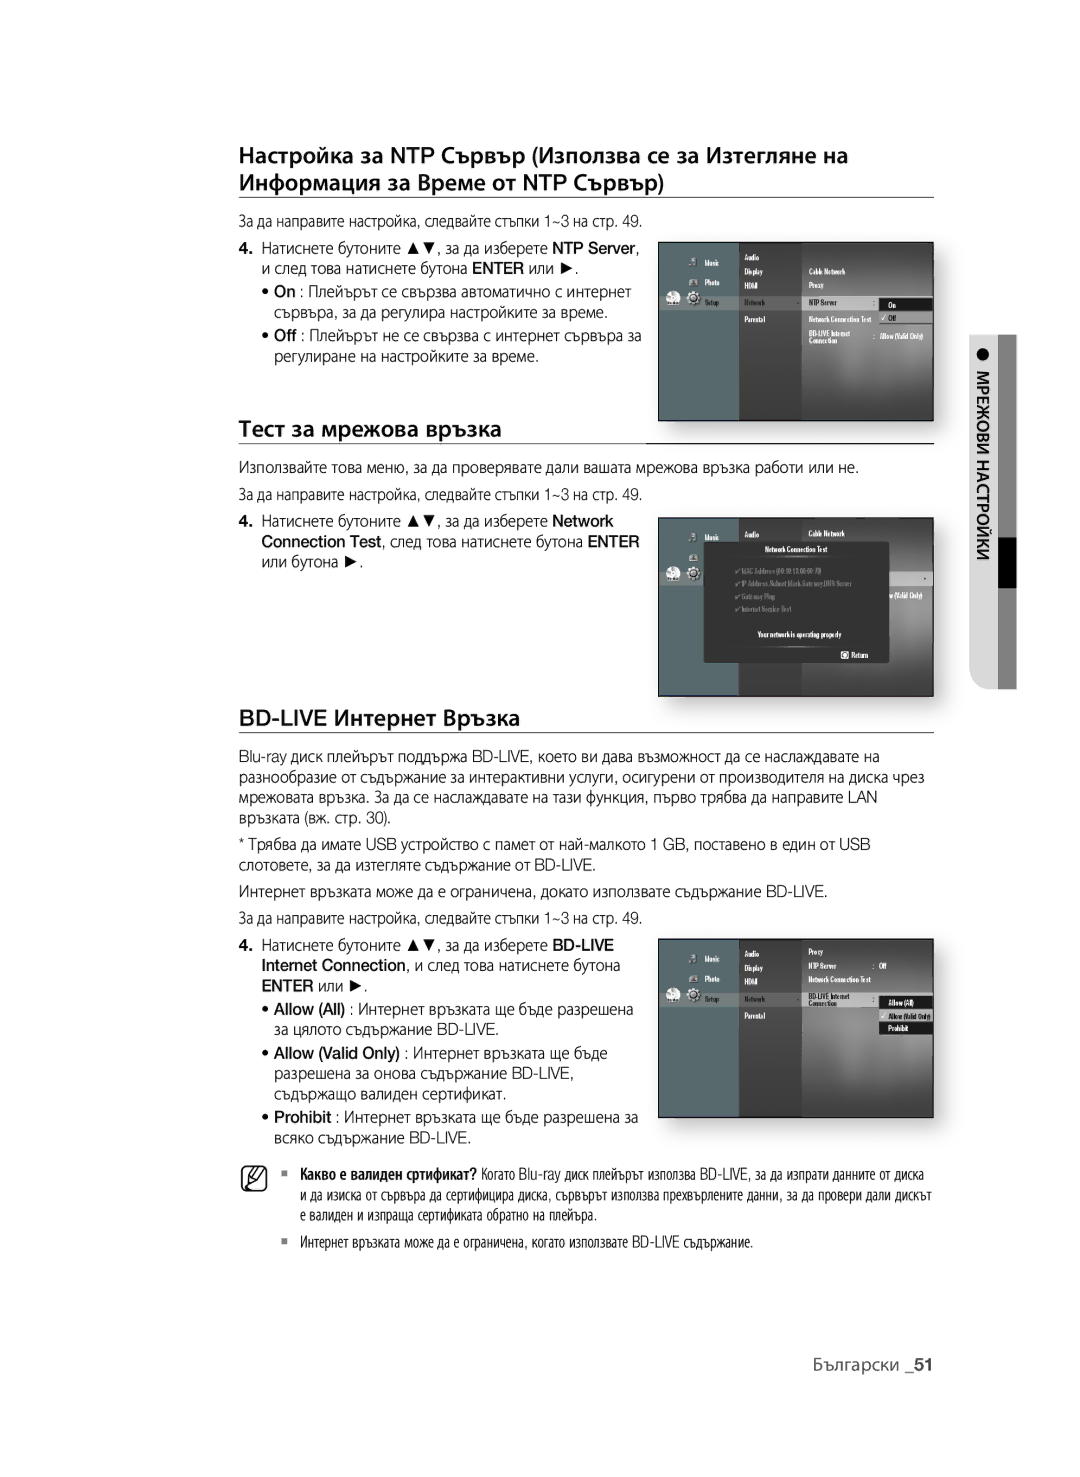 Samsung BD-P1580/EDC manual Тест за мрежова връзка, BD-LIVE интернет Връзка, Enter или, За цялото съдържание BD-LIVE 